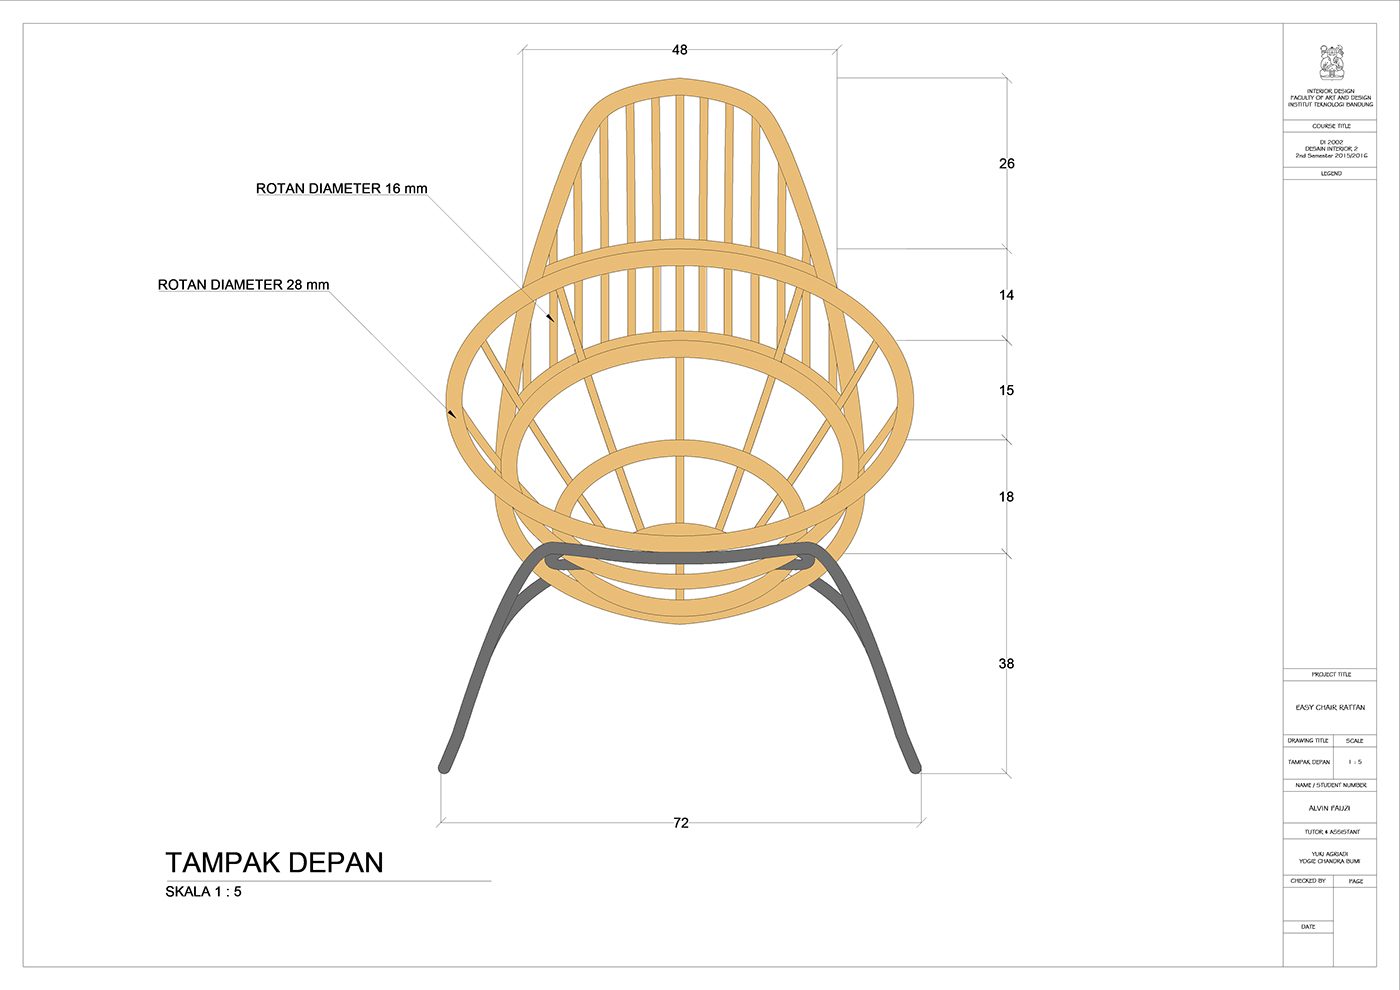 rattan meubel easy chair avocado CADL chair furniture modern chair Desain Interior